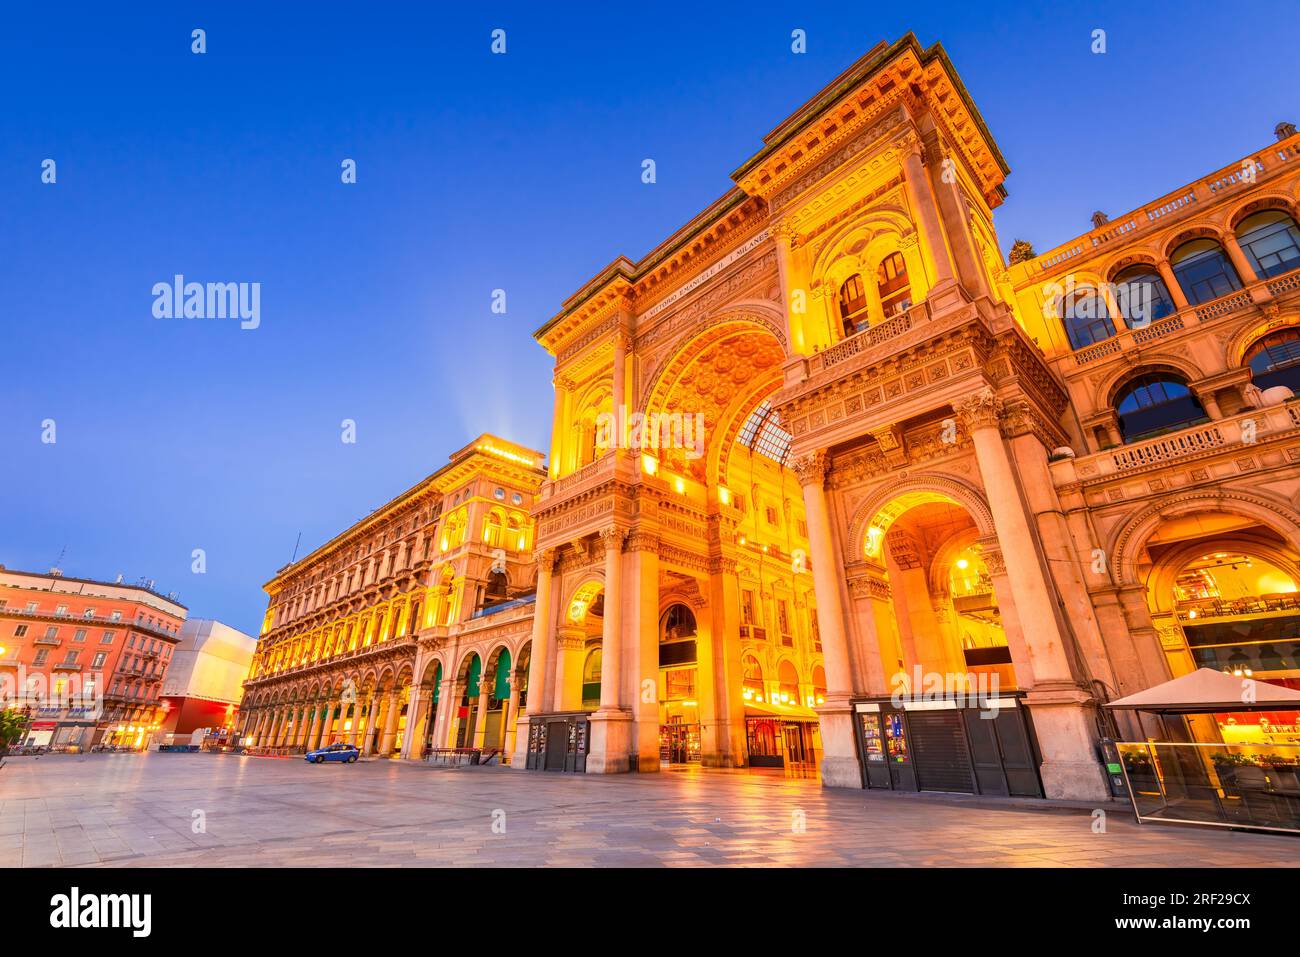 Mailand, Italien - Galerie Vittorio Emanuele auf dem Platz Piazza Duomo, Morgendämmerung beleuchtet. Stockfoto